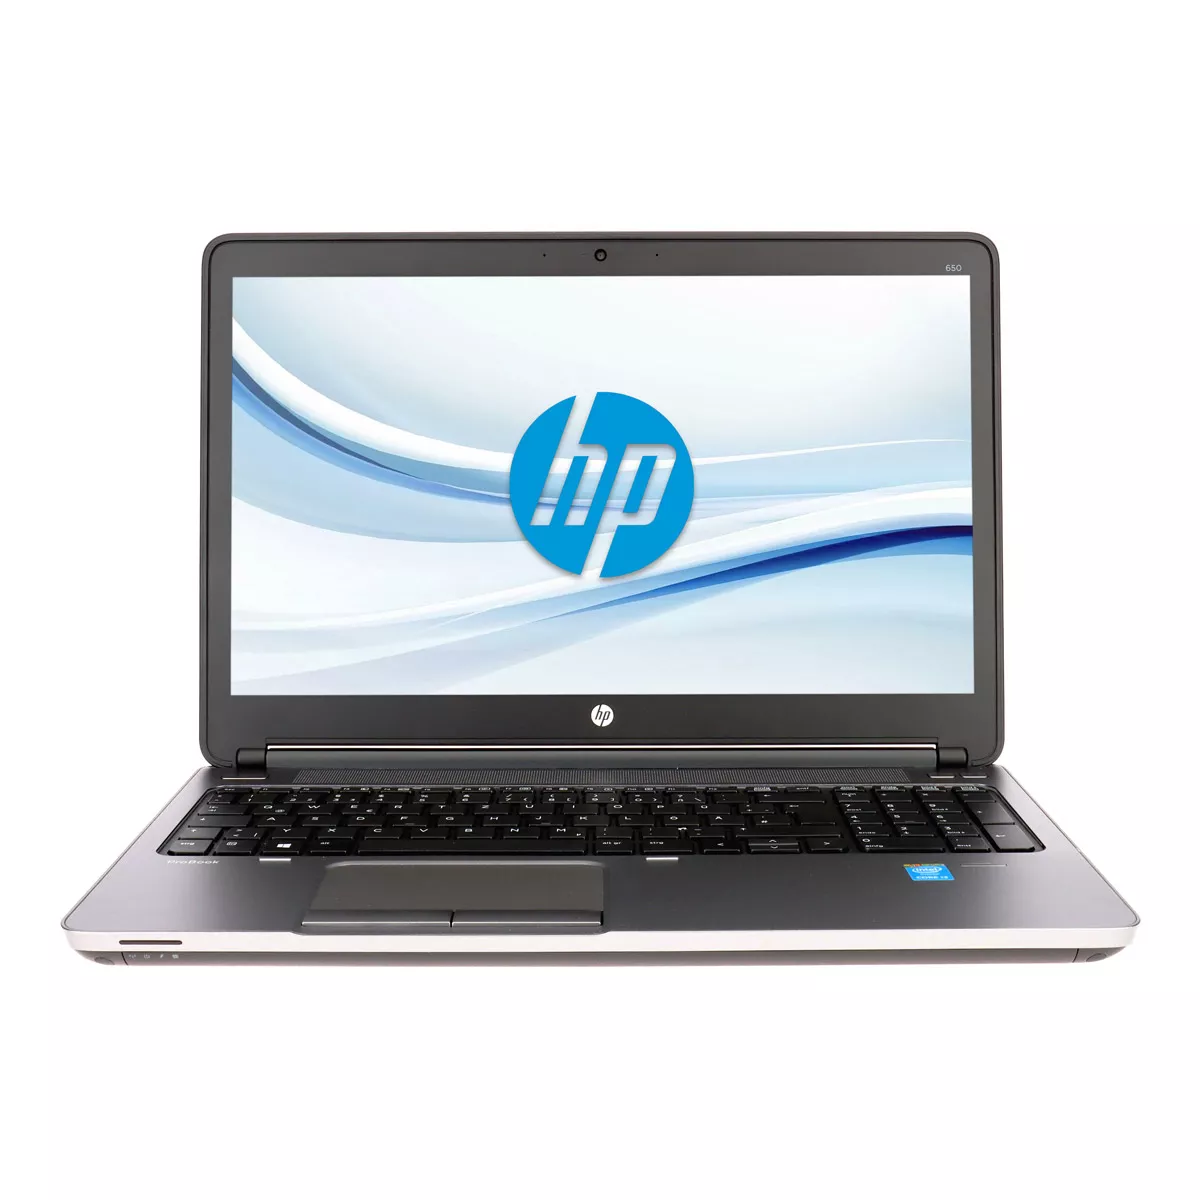 HP ProBook 650 G1 Core i5 4300M 2,6 GHz Full-HD 8 GB 256 GB SSD